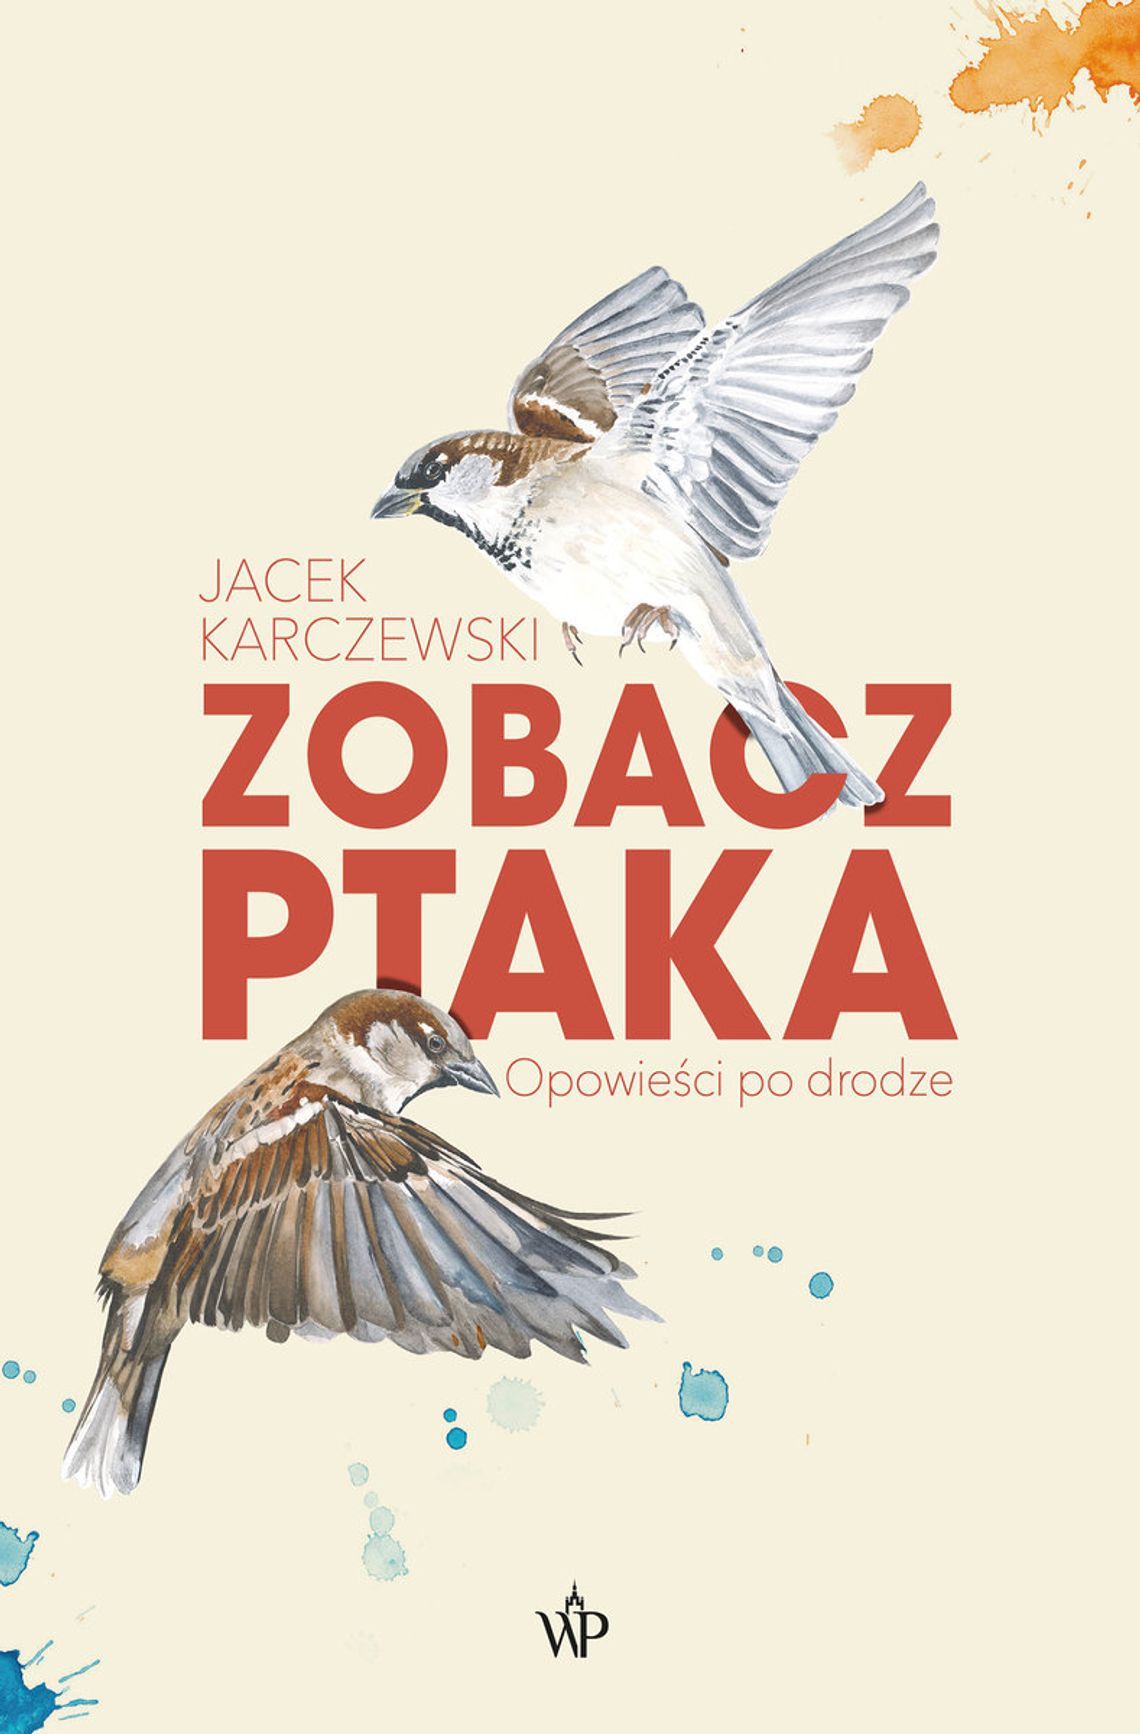 "Zobacz ptaka. Opowieści po drodze" - Jacek Karczewski